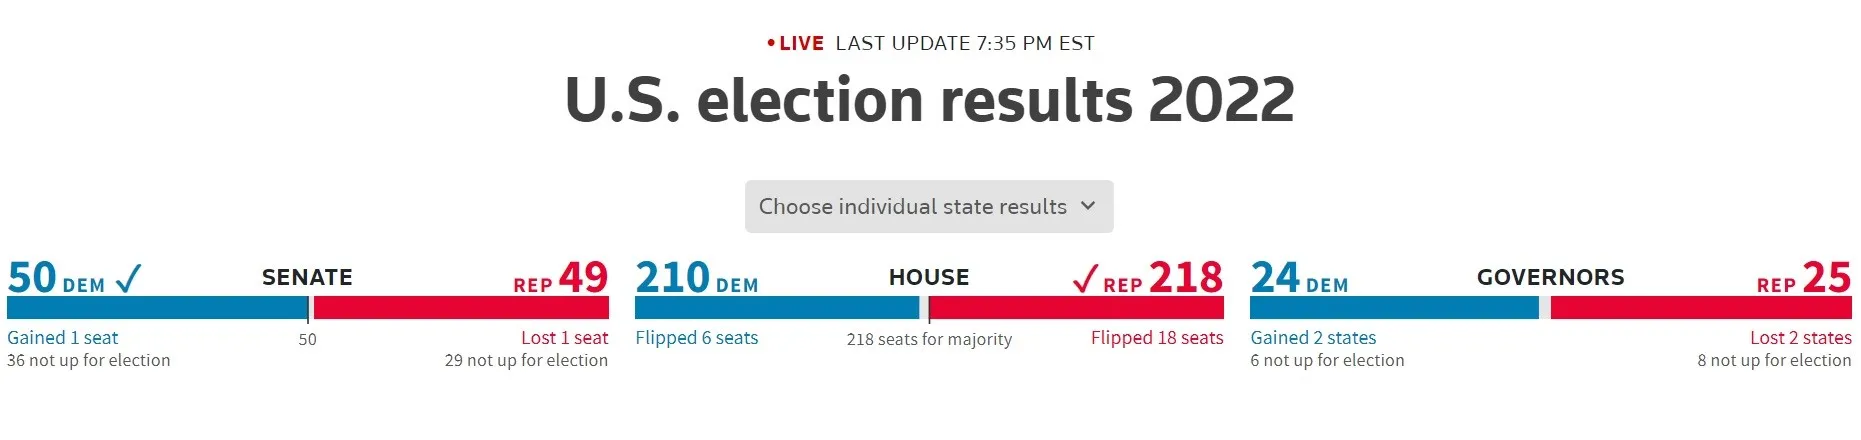 Đảng Cộng hòa cán đích 218 phiếu, giành quyền kiểm soát Hạ viện Mỹ